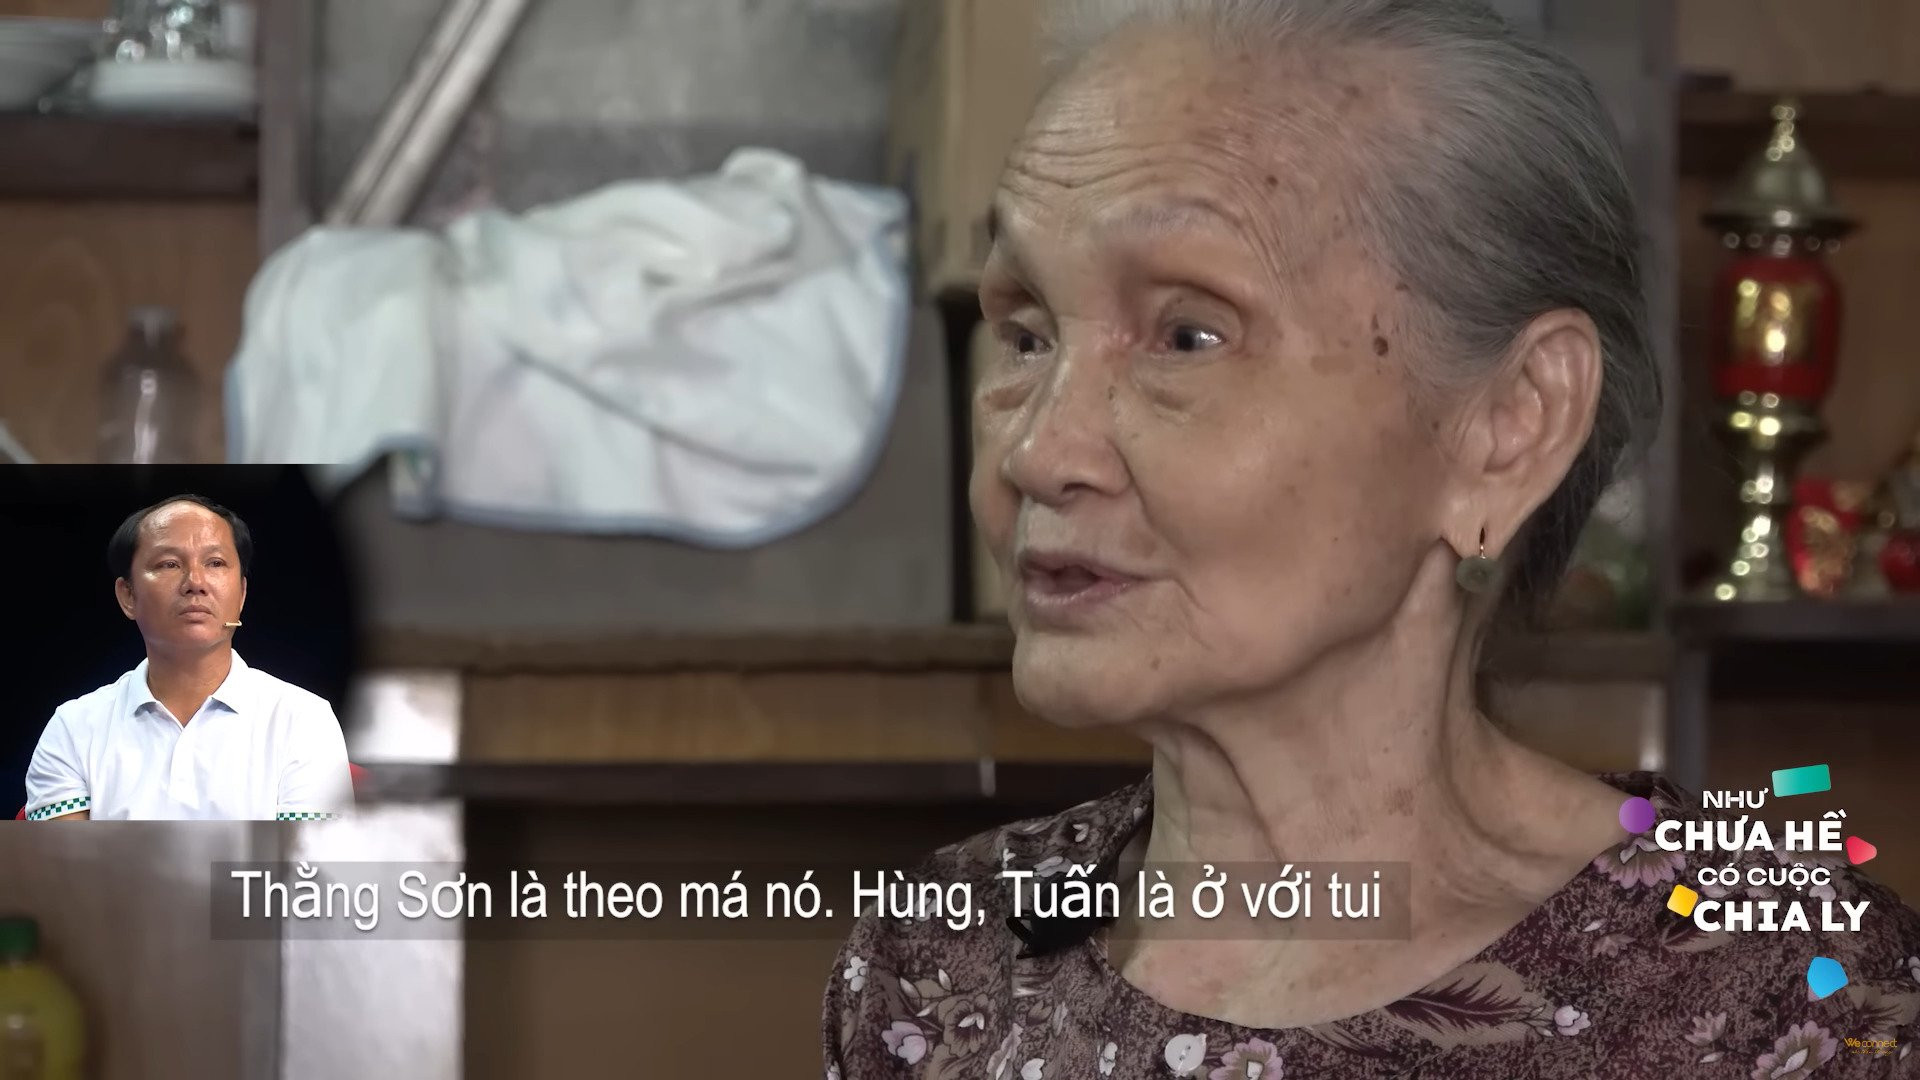 Bà Nguyễn Thị Lan là người phụ nữ xuất hiện trong ký ức của anh Sơn thuở bé. Ảnh: Chụp màn hình